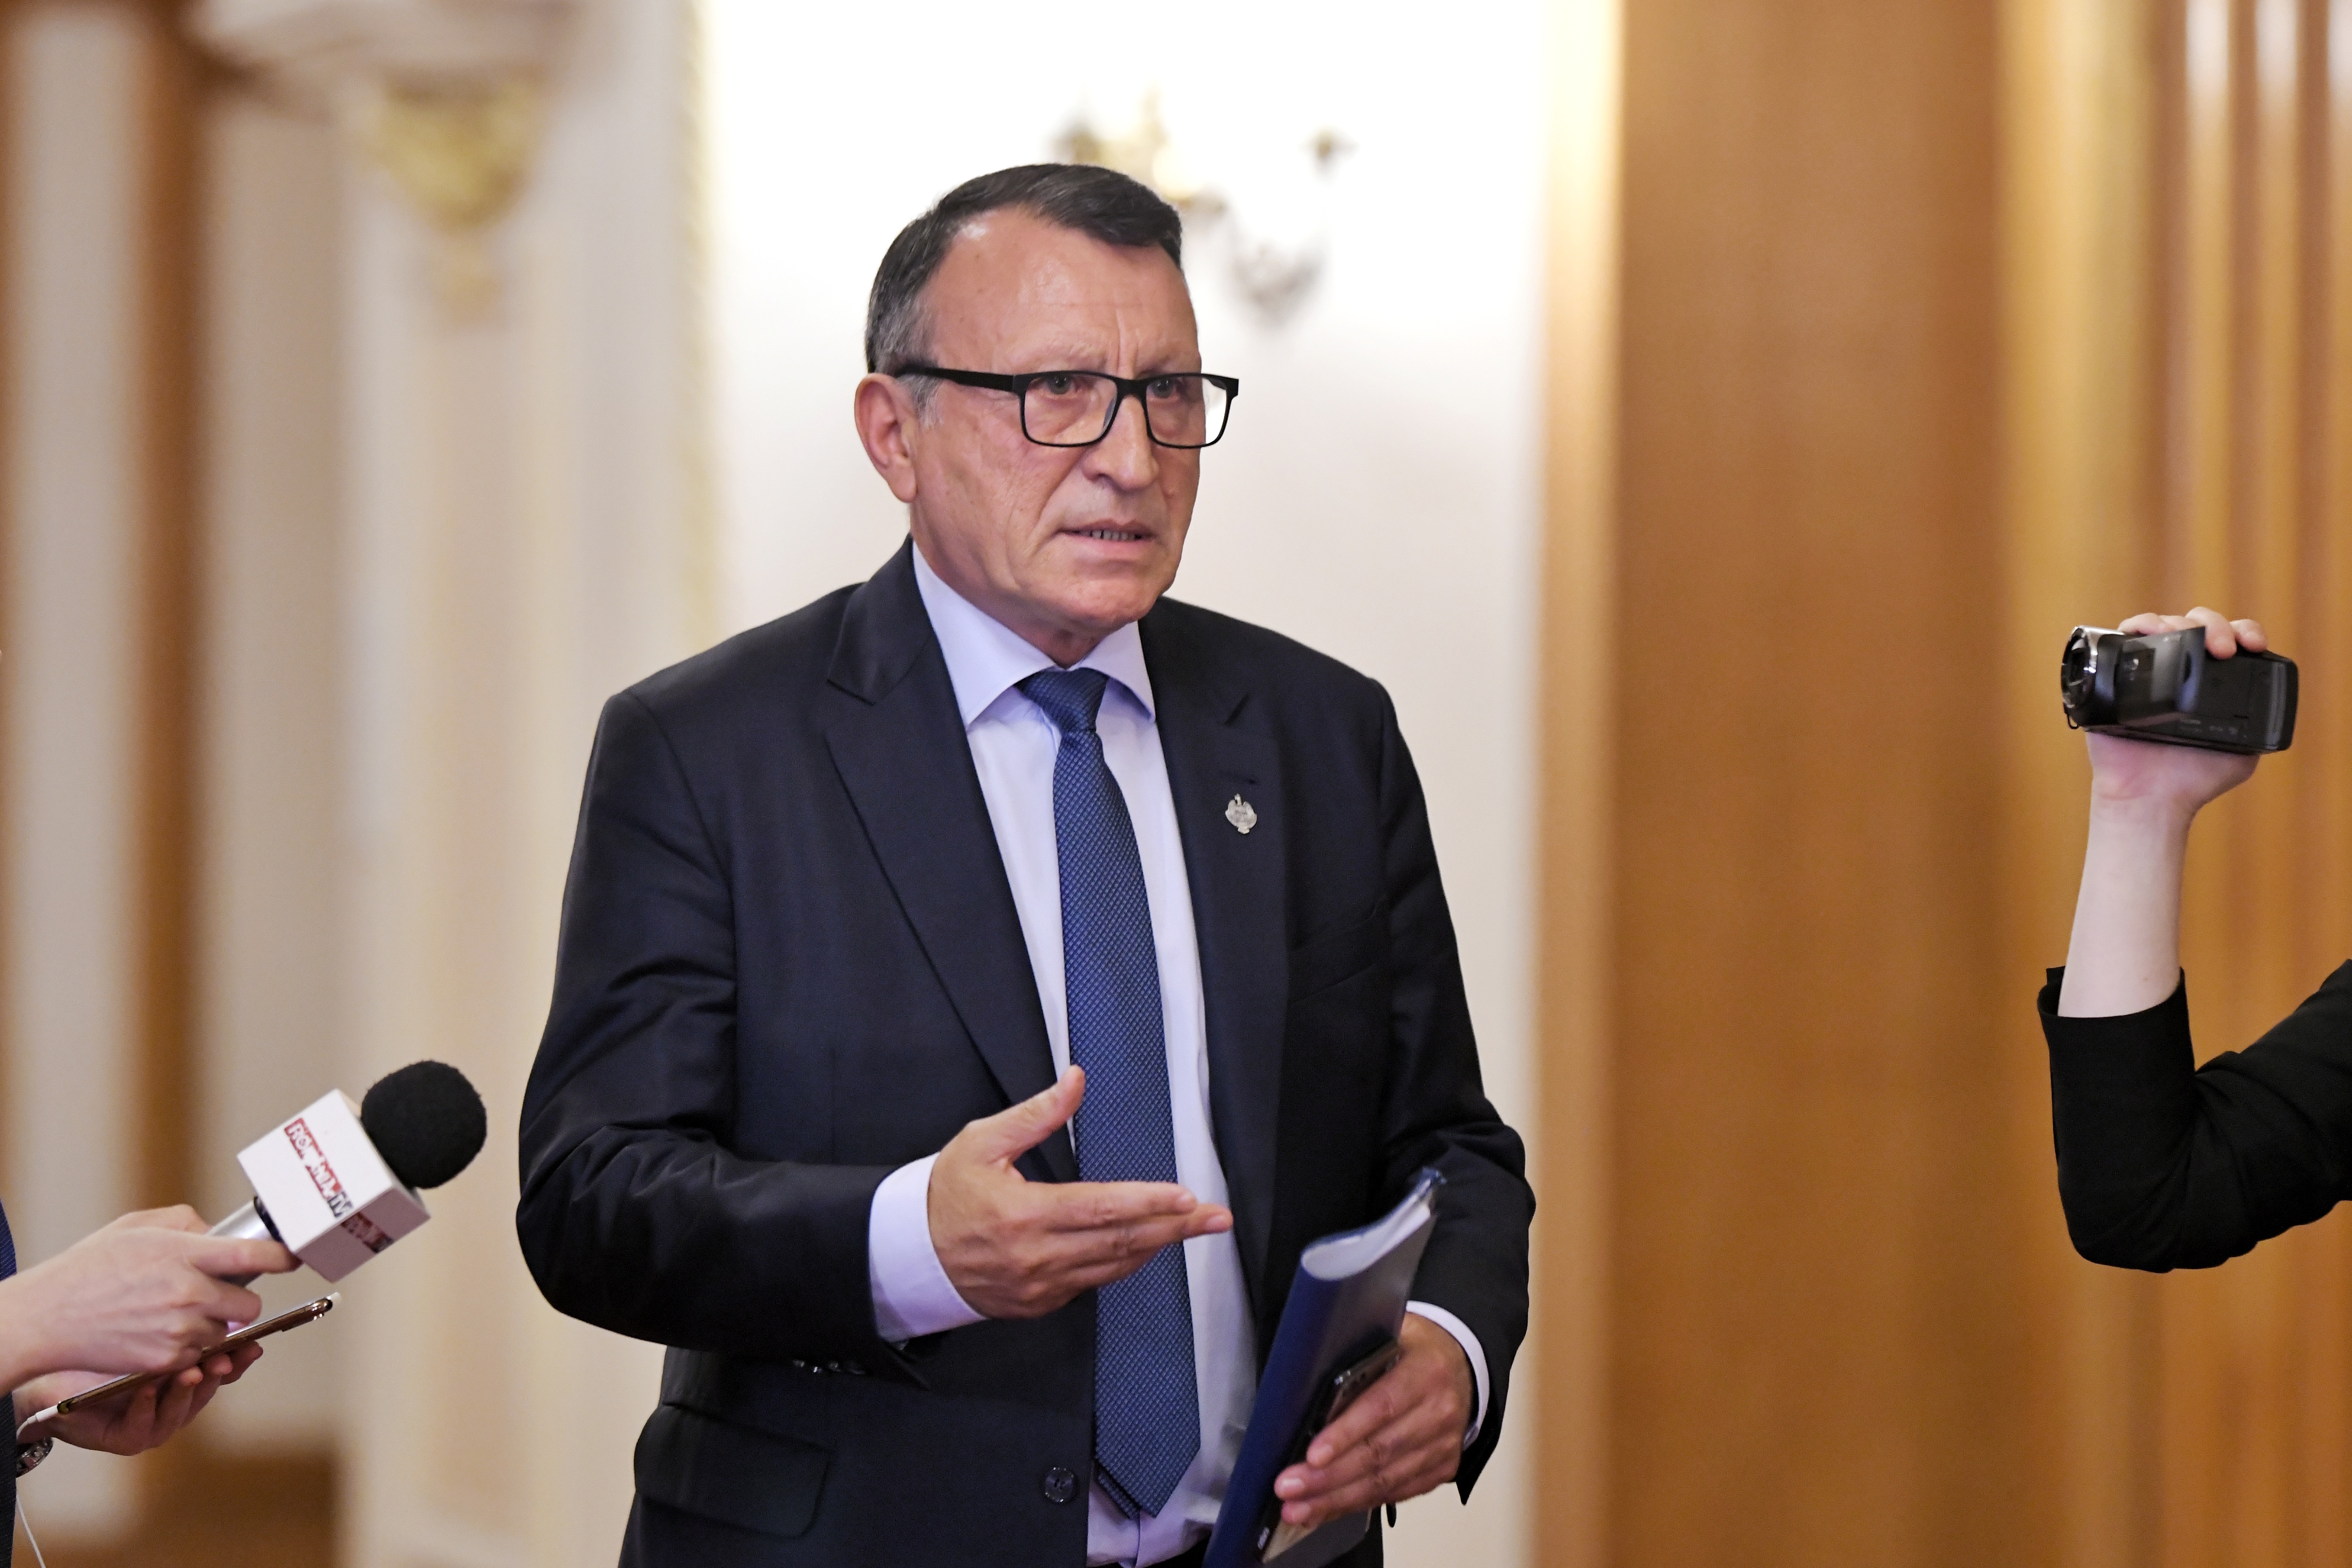 Secretarul general interimar al PSD, Paul Stanescu, despre posibilitatea apariţiei unui guvern de uniune naţională: Nu ştiu dacă ar fi cea mai bună variantă